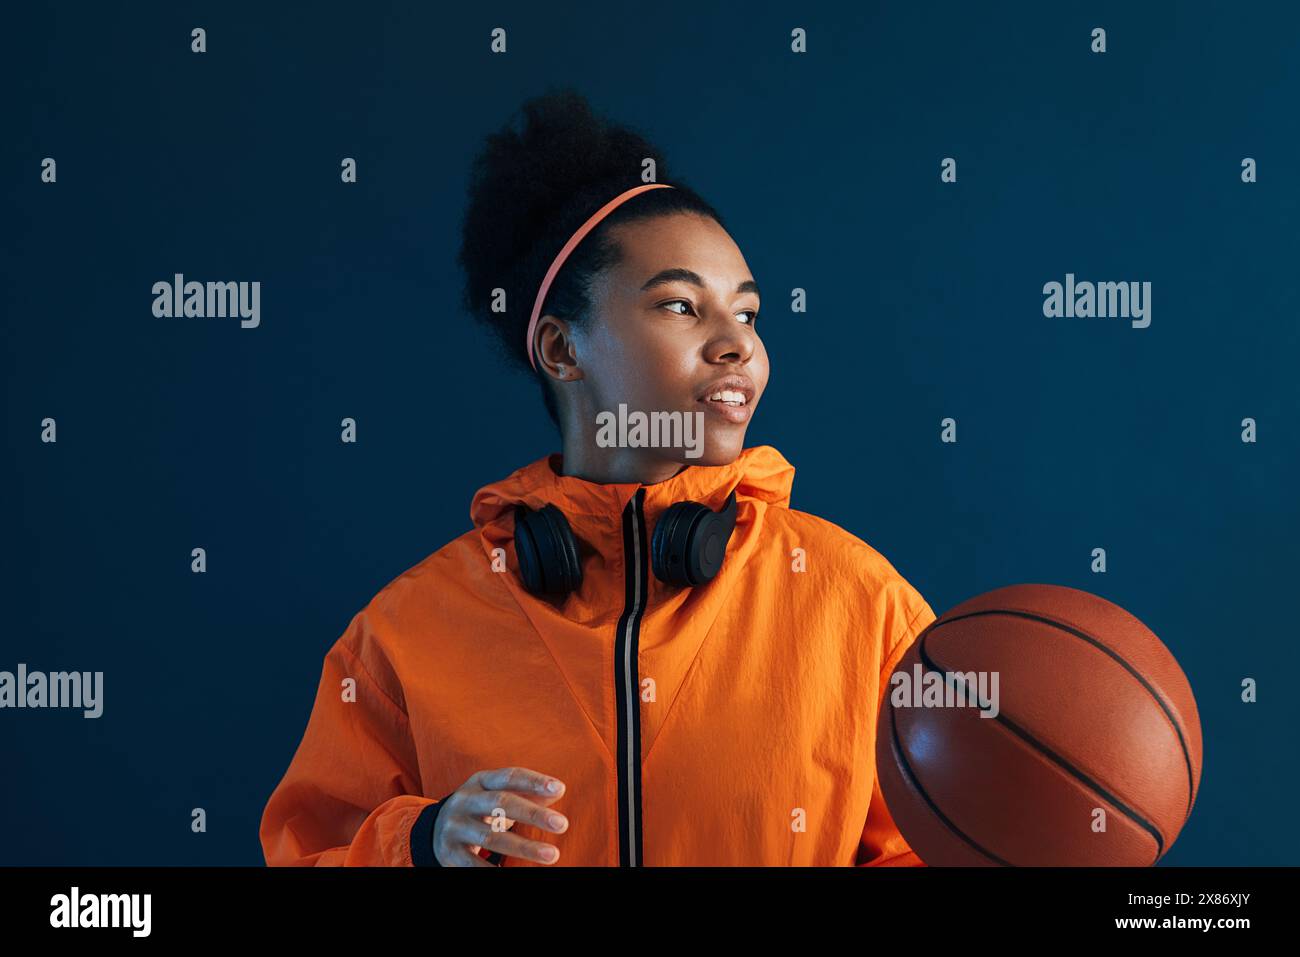 Ritratto di una giocatrice professionista di basket che guarda lontano in uno studio. Giocatrice di basket sicura di sé che indossa un abbigliamento sportivo arancione. Foto Stock